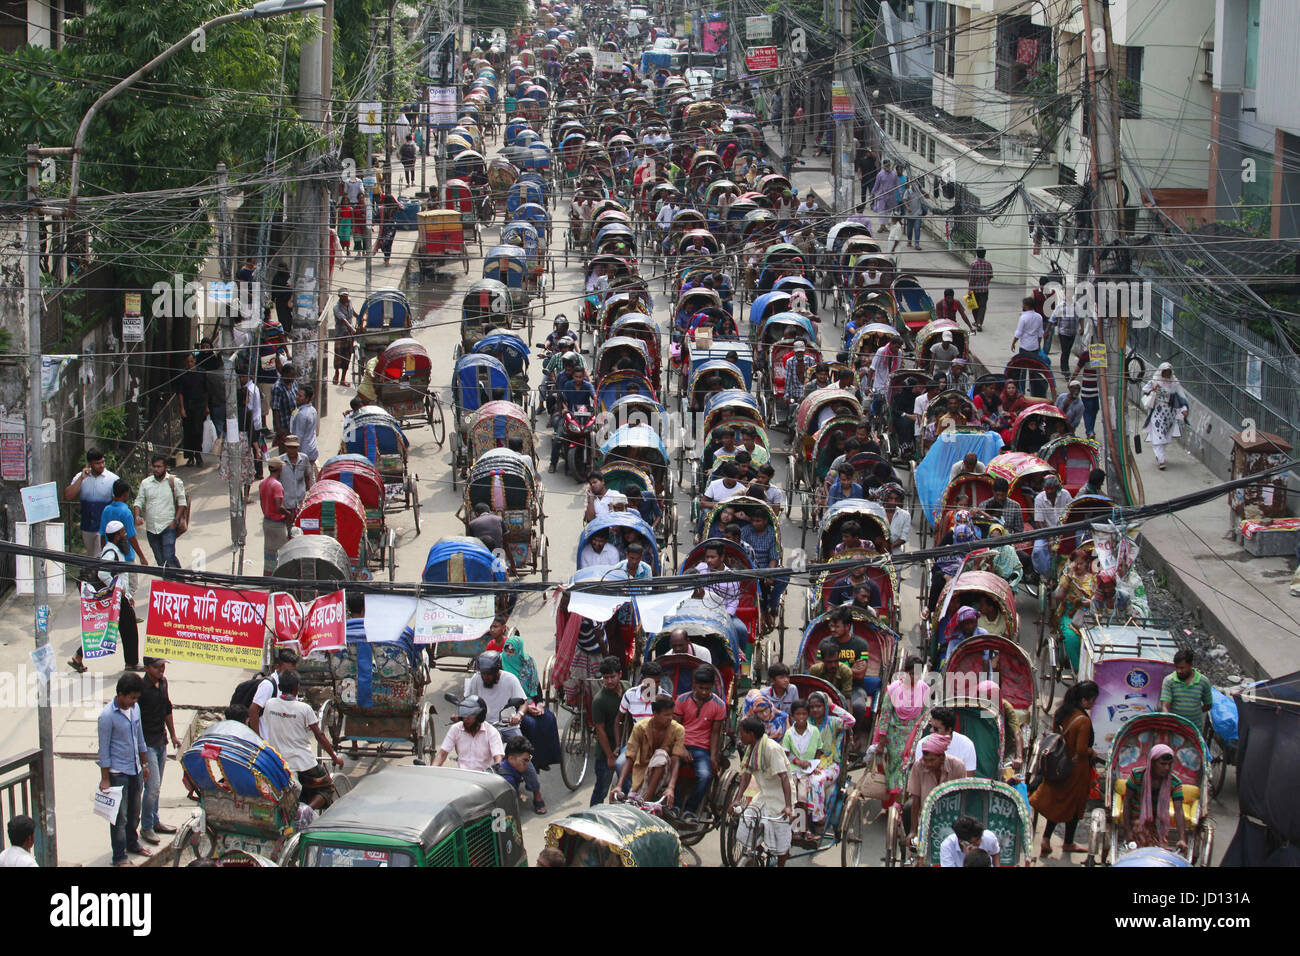 Dhaka, Bangladesh. 18 de junio de 2017. Cientos de rickshaws, está atrapado en un atasco en Dhanmondi en Dhaka, Bangladesh, 18 de junio de 2017. Cada año esta misma calle ve un alto número de los vehículos no motorizados por delante de Eid cuando el número de rickshaws ilegales en las calles de la ciudad aumenta. Aproximadamente dos lakh rickshaws adicionales han afectado a las calles de la ciudad delante del Eid-ul-Fitr, causando el tráfico masivo gruñidos-ups, con los funcionarios encargados de hacer cumplir la ley opta por ignorar el tema en lo que ellos dicen que son extraoficialmente por razones humanitarias. Crédito: Zuma Press, Inc./Alamy Live News Foto de stock